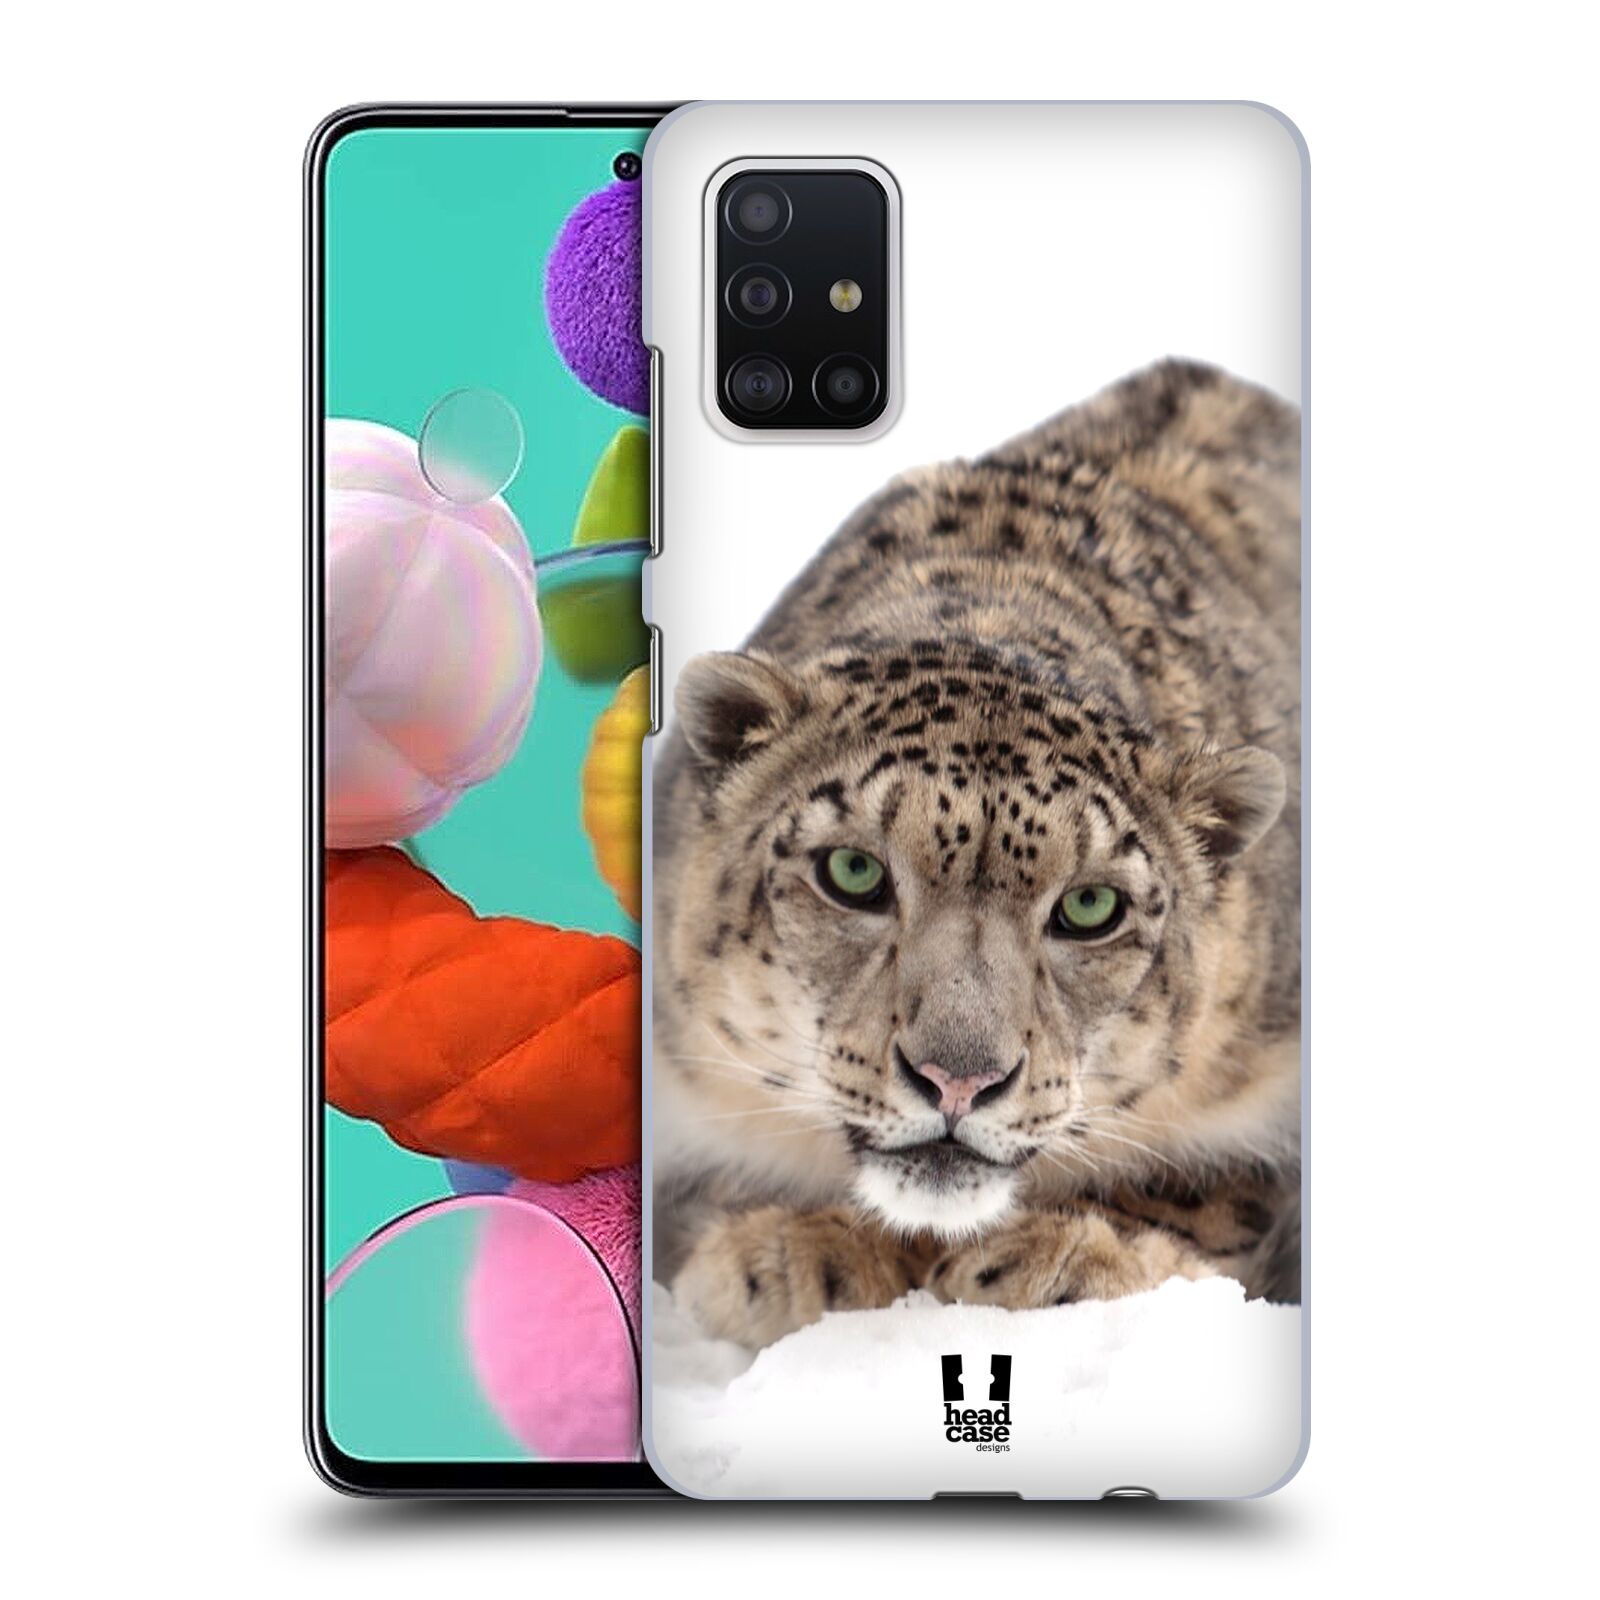 Pouzdro na mobil Samsung Galaxy A51 - HEAD CASE - vzor Divočina, Divoký život a zvířata foto SNĚŽNÝ LEOPARD